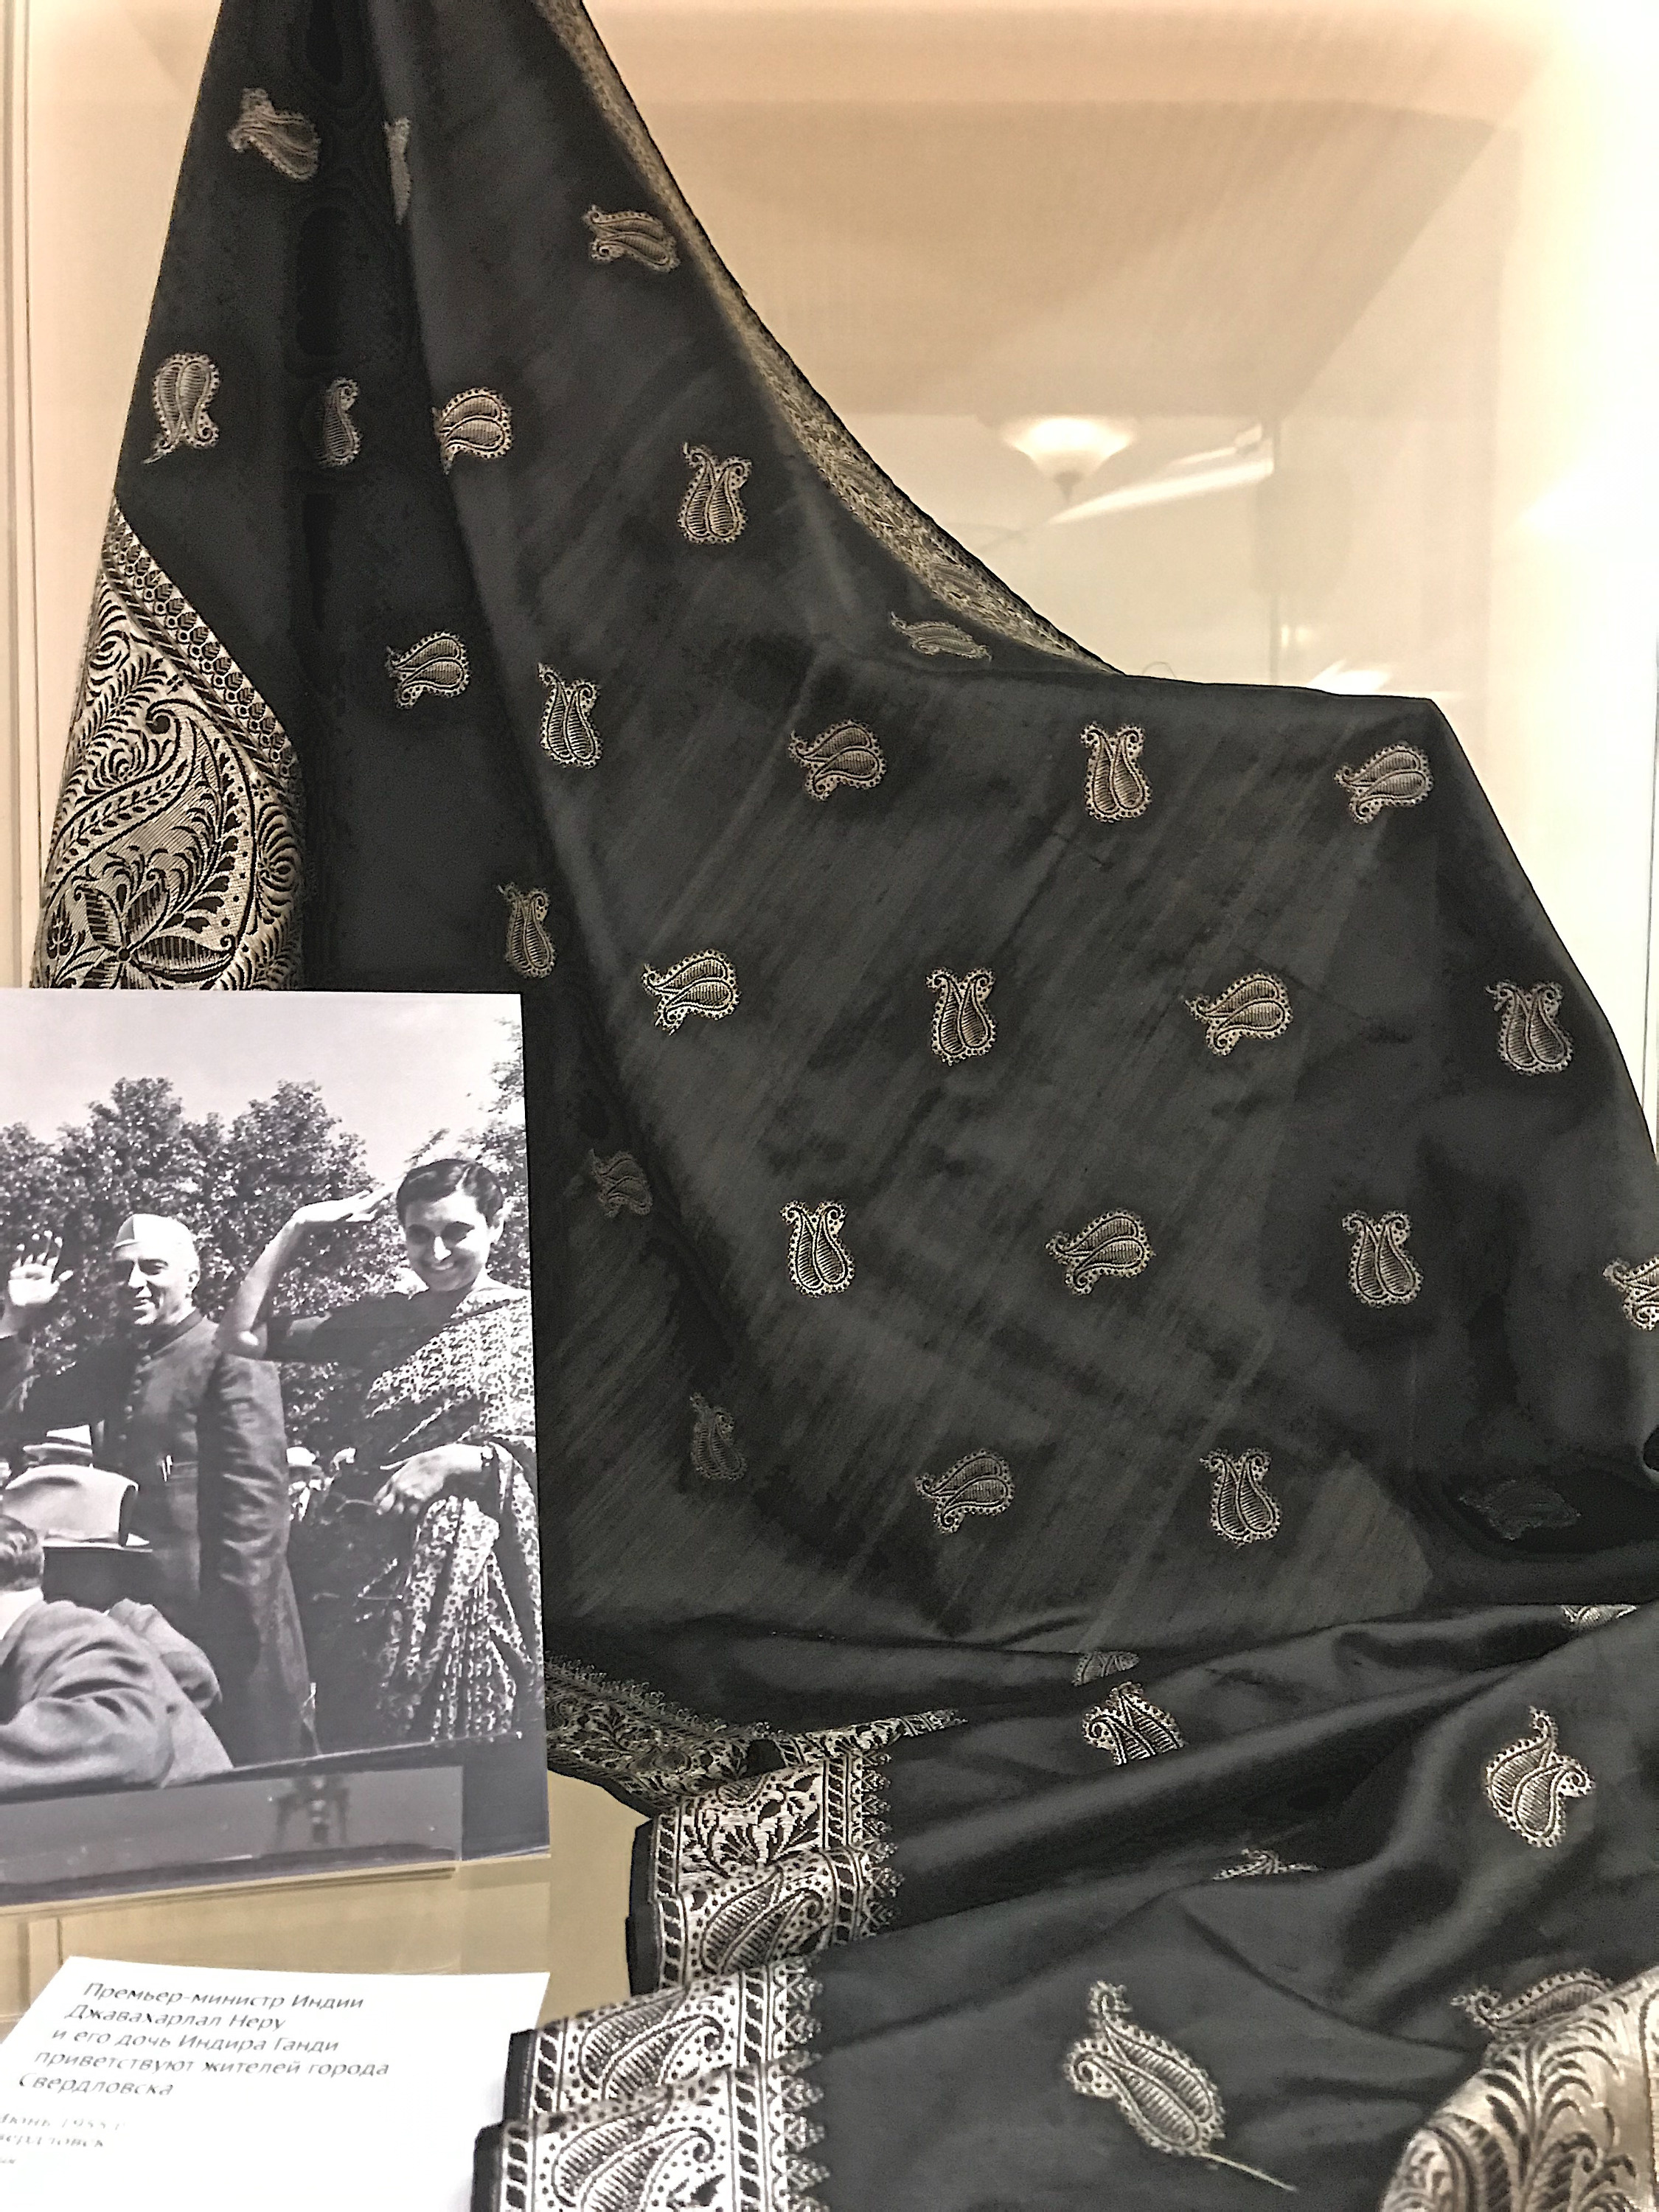 Шаль, подаренная Индирой Ганди, когда она в июне 1955 года приезжала в Свердловск вместе со своим отцом, премьер-министром Индии Джавахарлалом Неру